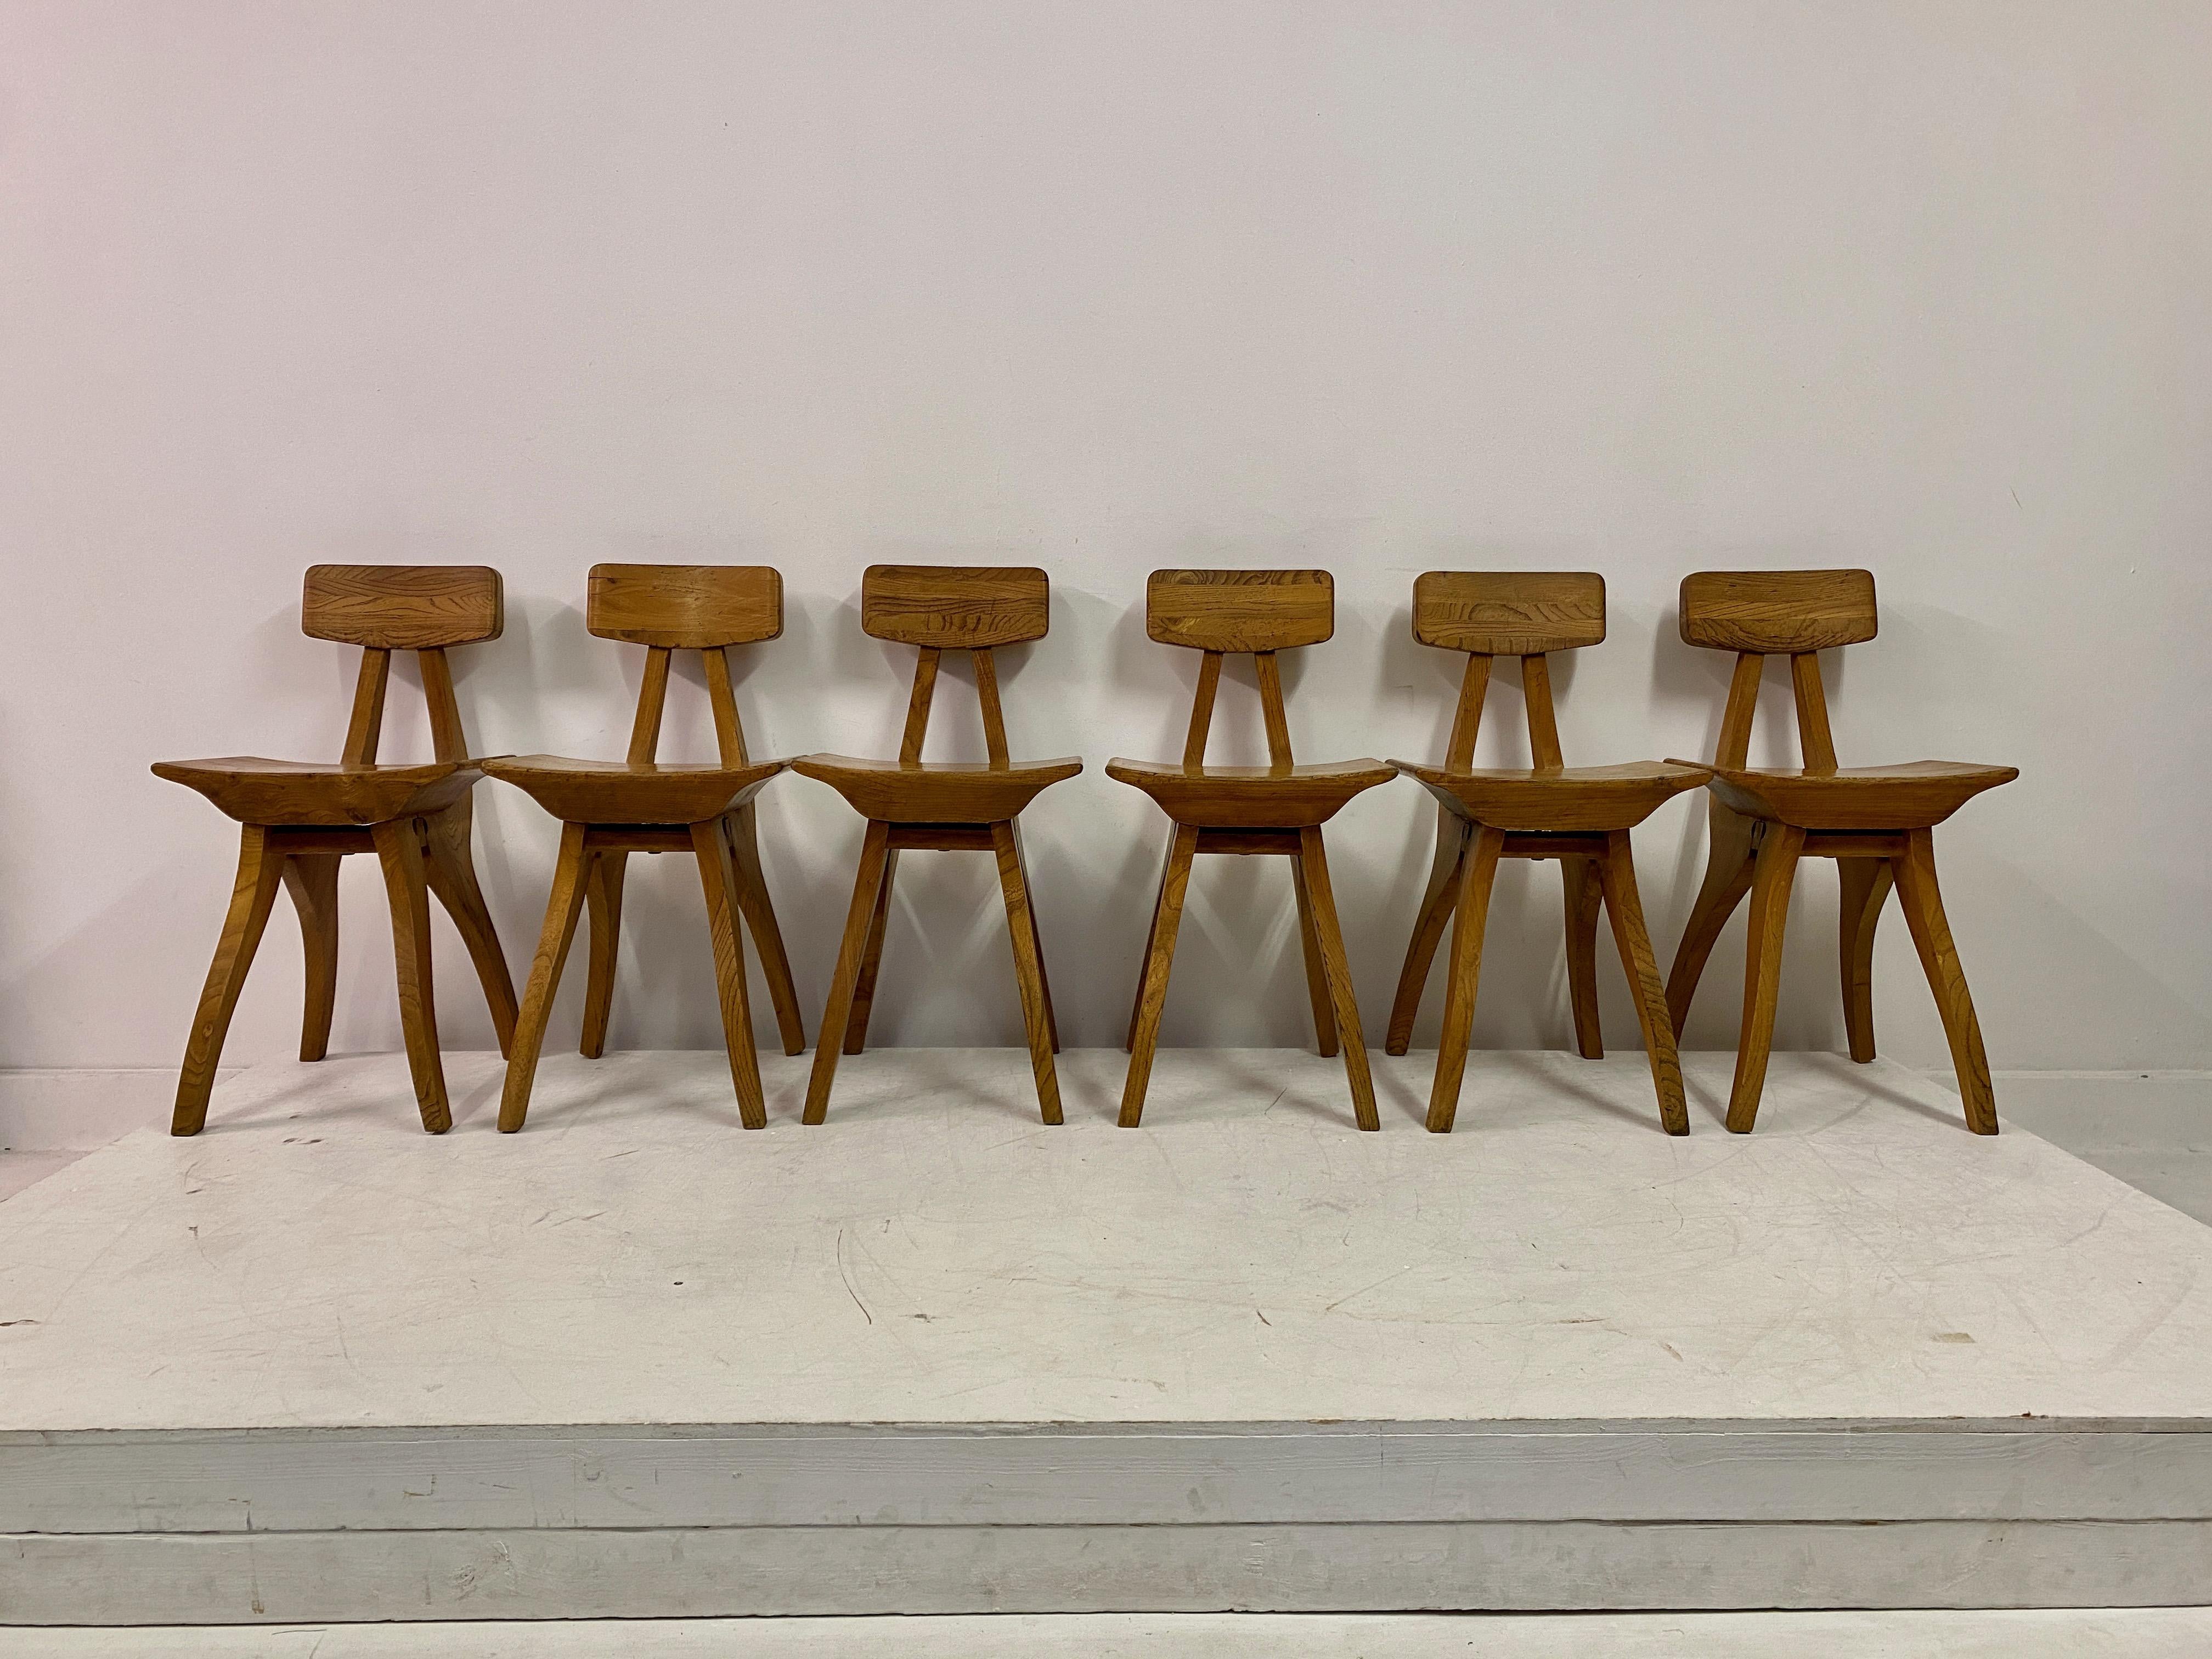 Satz von sechs Stühlen

Ulme

Brutalismus

Ungewöhnliche Form und Konstruktion

Mitte des Jahrhunderts

Sitzhöhe 47cm